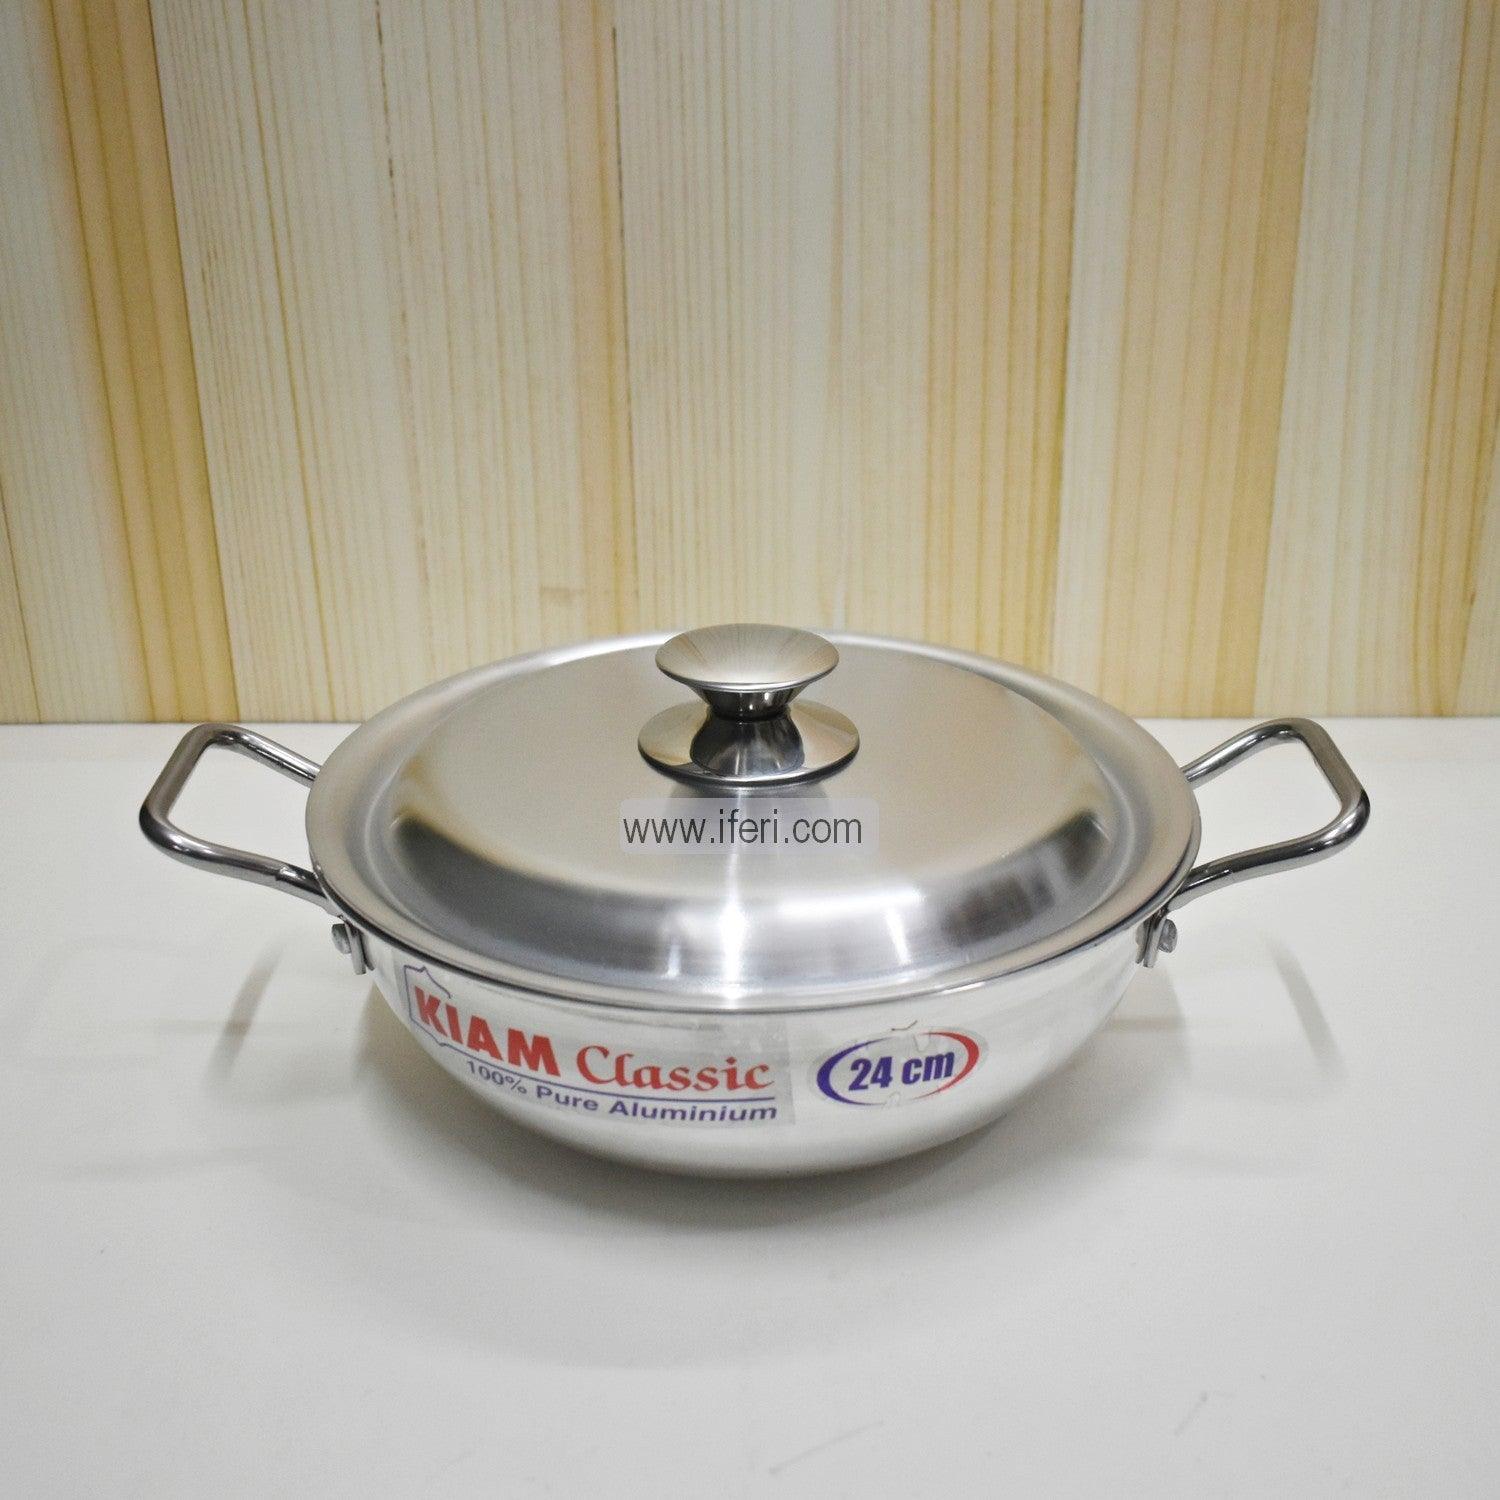 26 cm Kiam Aluminium Classic Wok Korai Cookware With Aluminium Lid BCG0219 Price in Bangladesh - iferi.com